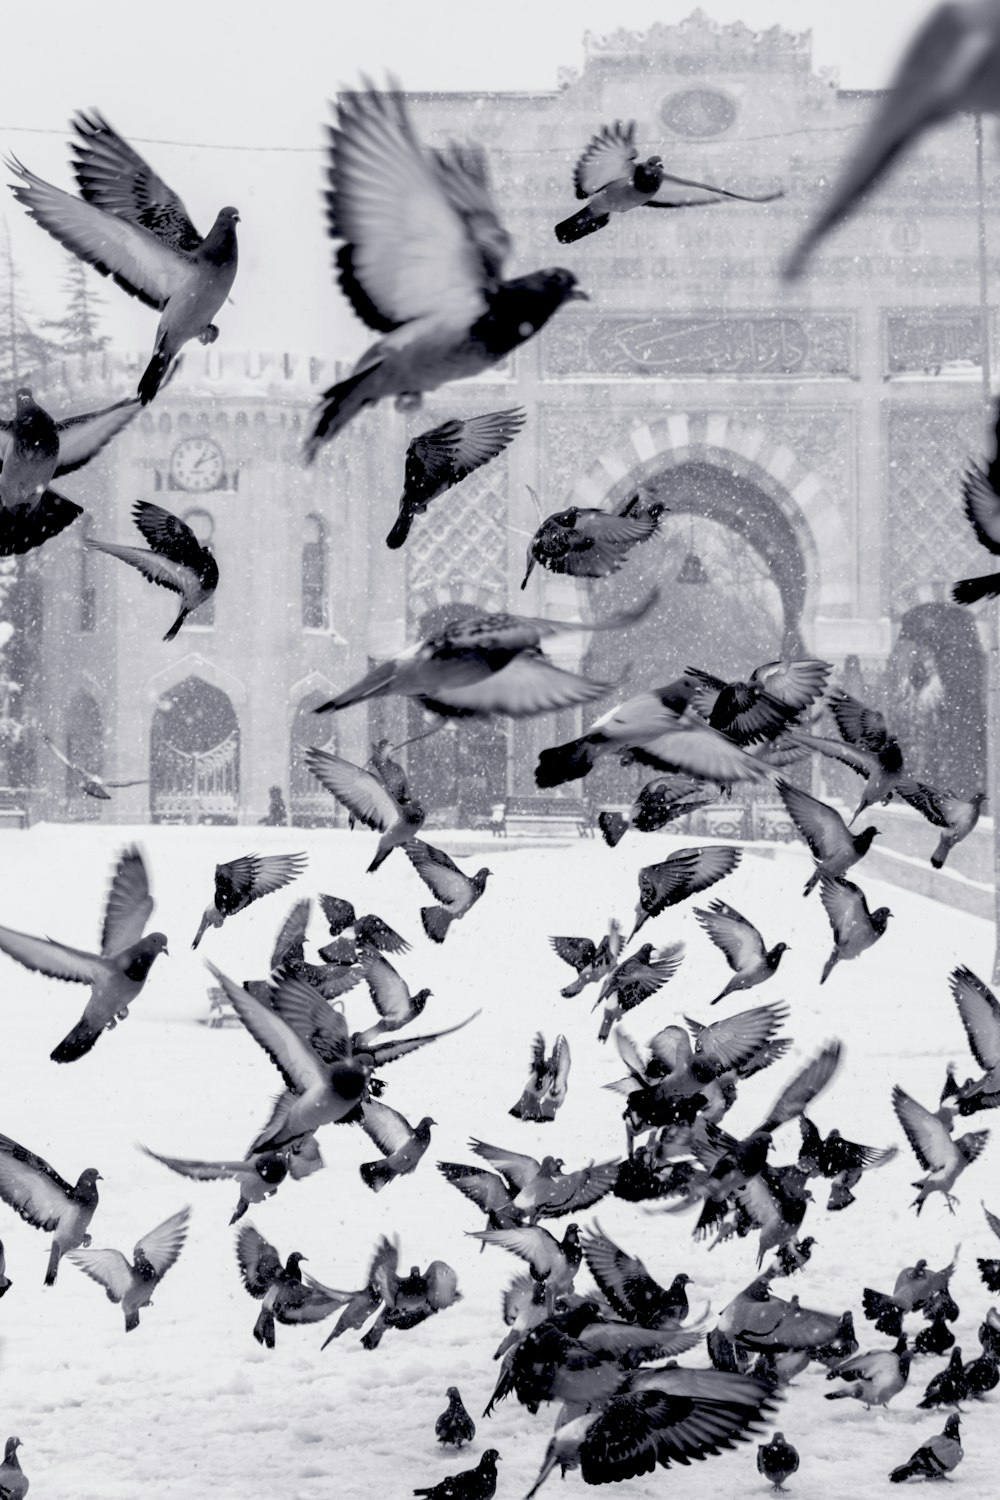 Tauben fliegen über schneebedecktes Feld